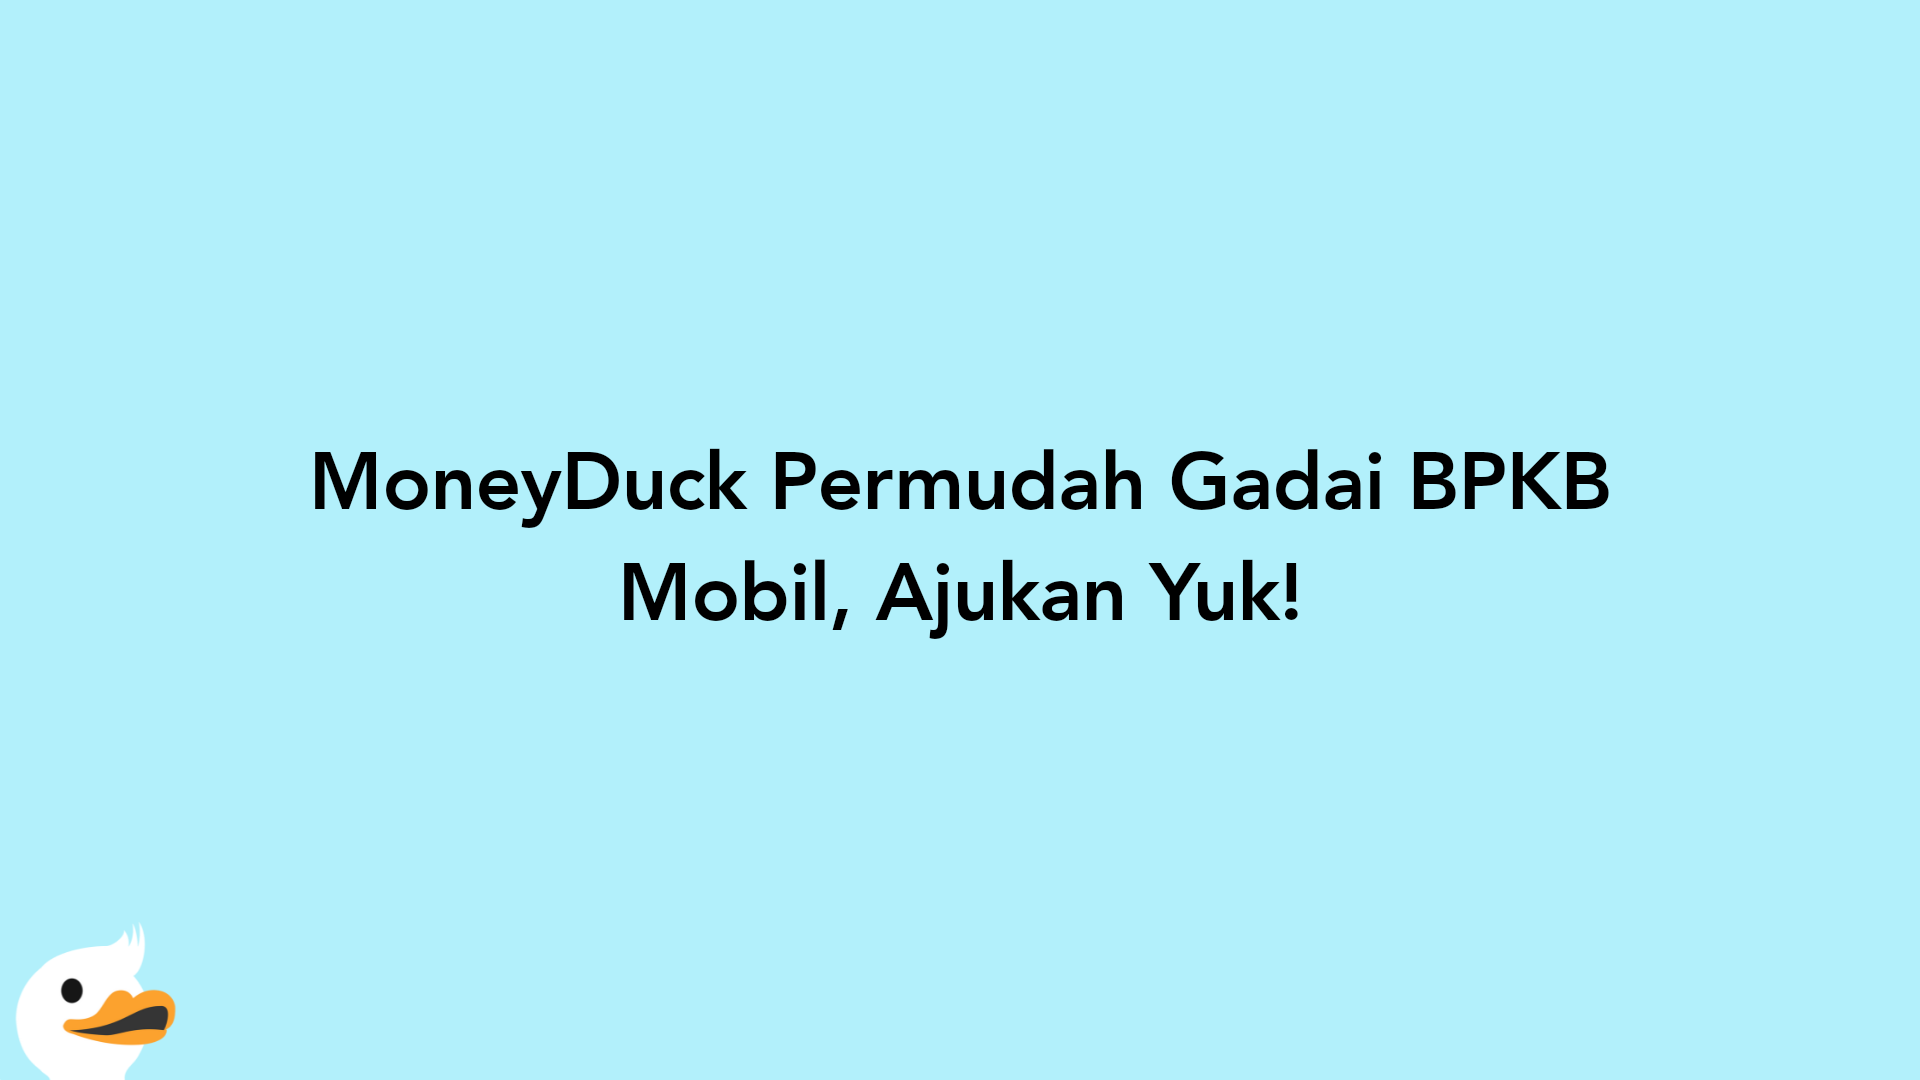 MoneyDuck Permudah Gadai BPKB Mobil, Ajukan Yuk!